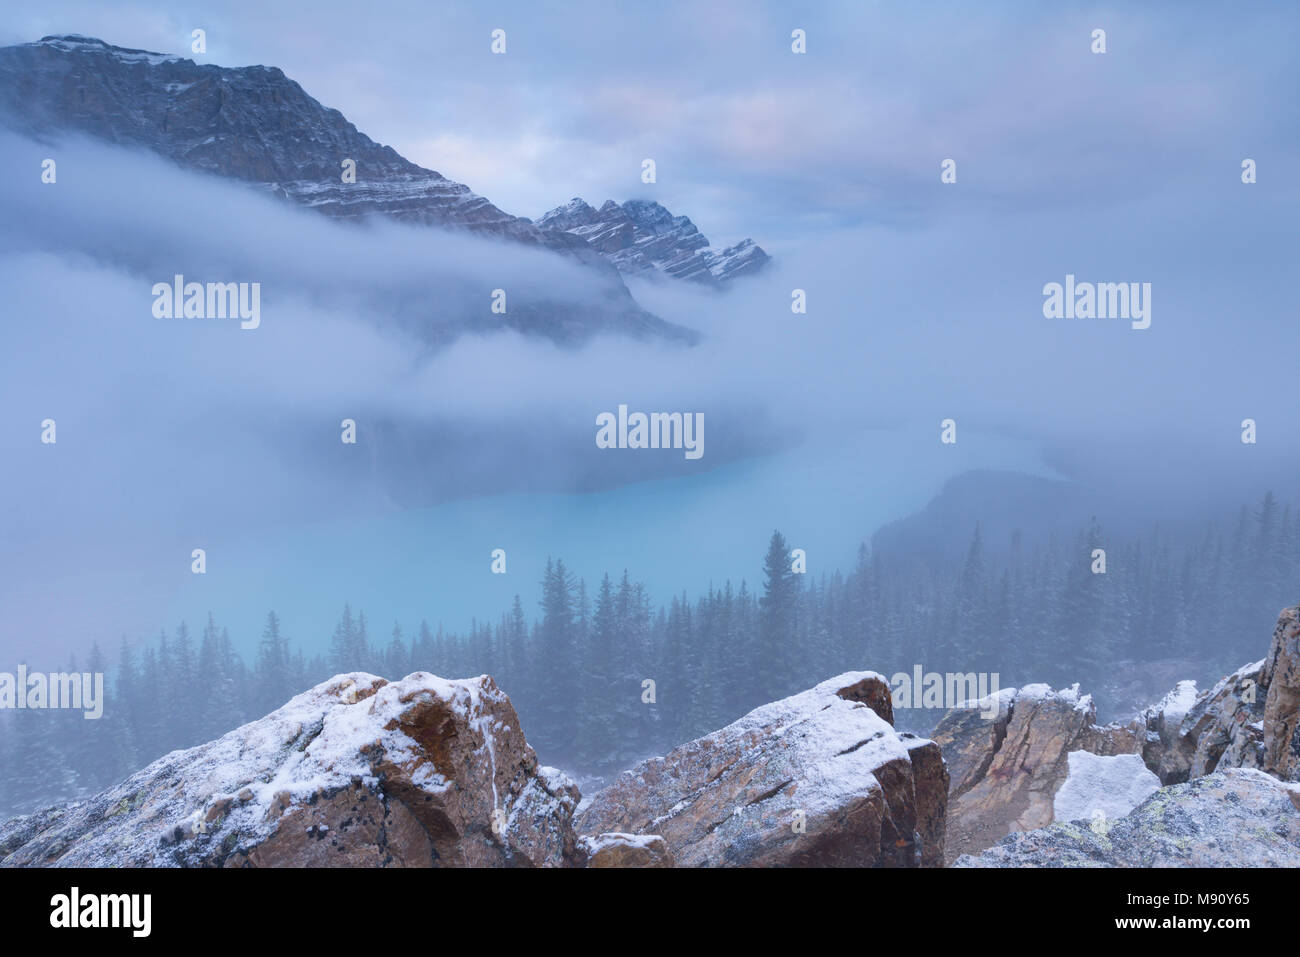 Tôt le matin, la brume enveloppe le Lac Peyto dans les Rocheuses canadiennes, le parc national Banff, Alberta, Canada. L'automne (septembre) 2017. Banque D'Images